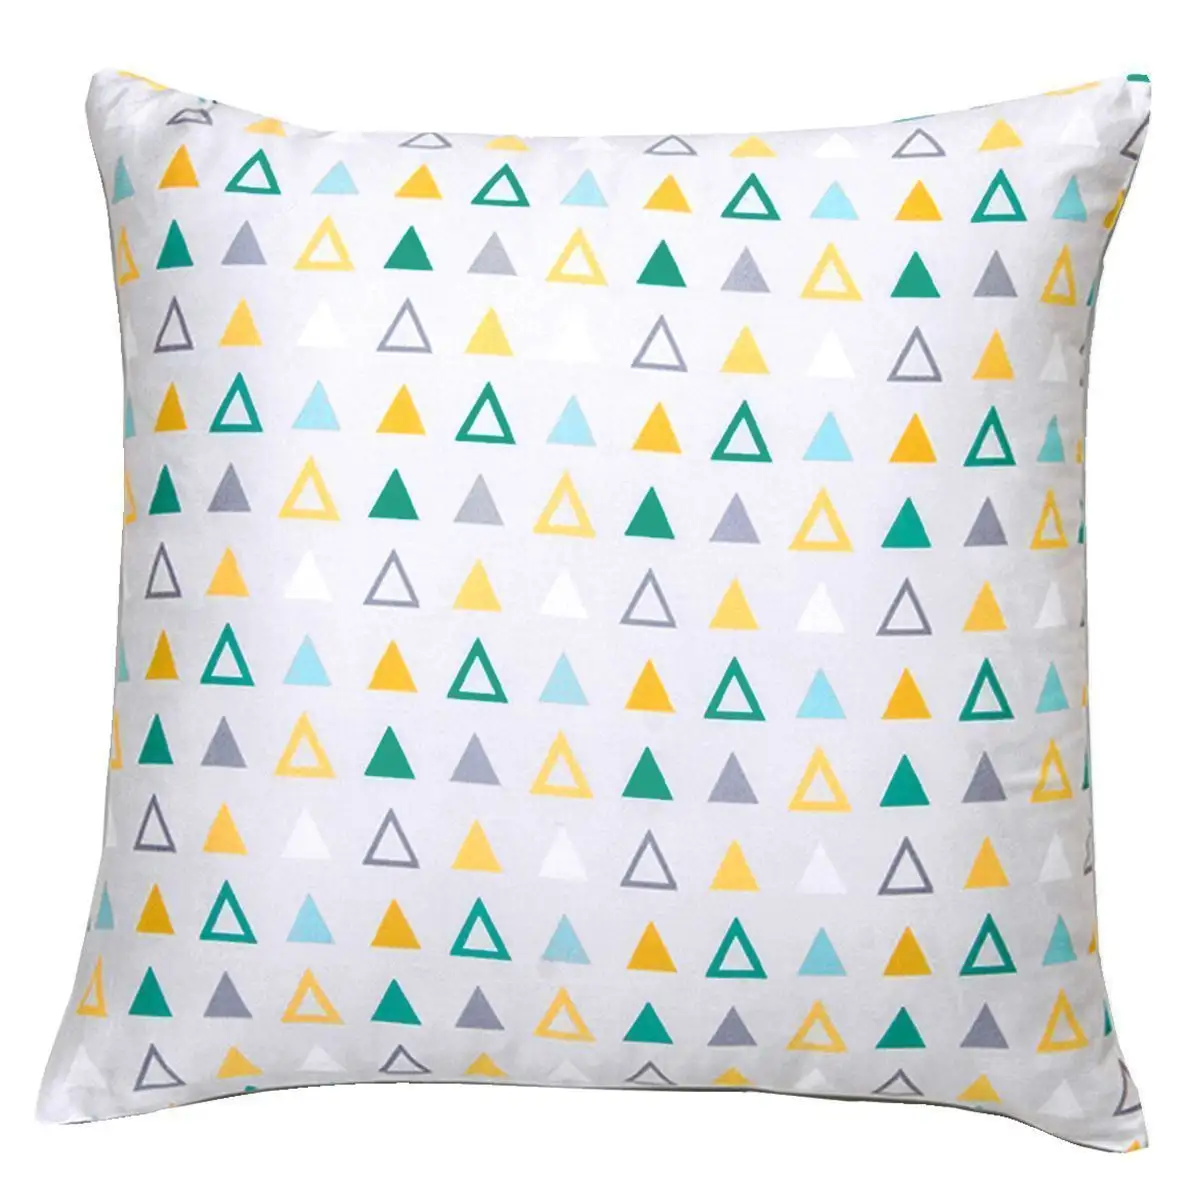 Наволочка для подушки с цифровым принтом, пустая сублимационная Подушка, желто-зелено-серые чехлы с геометрическим узором